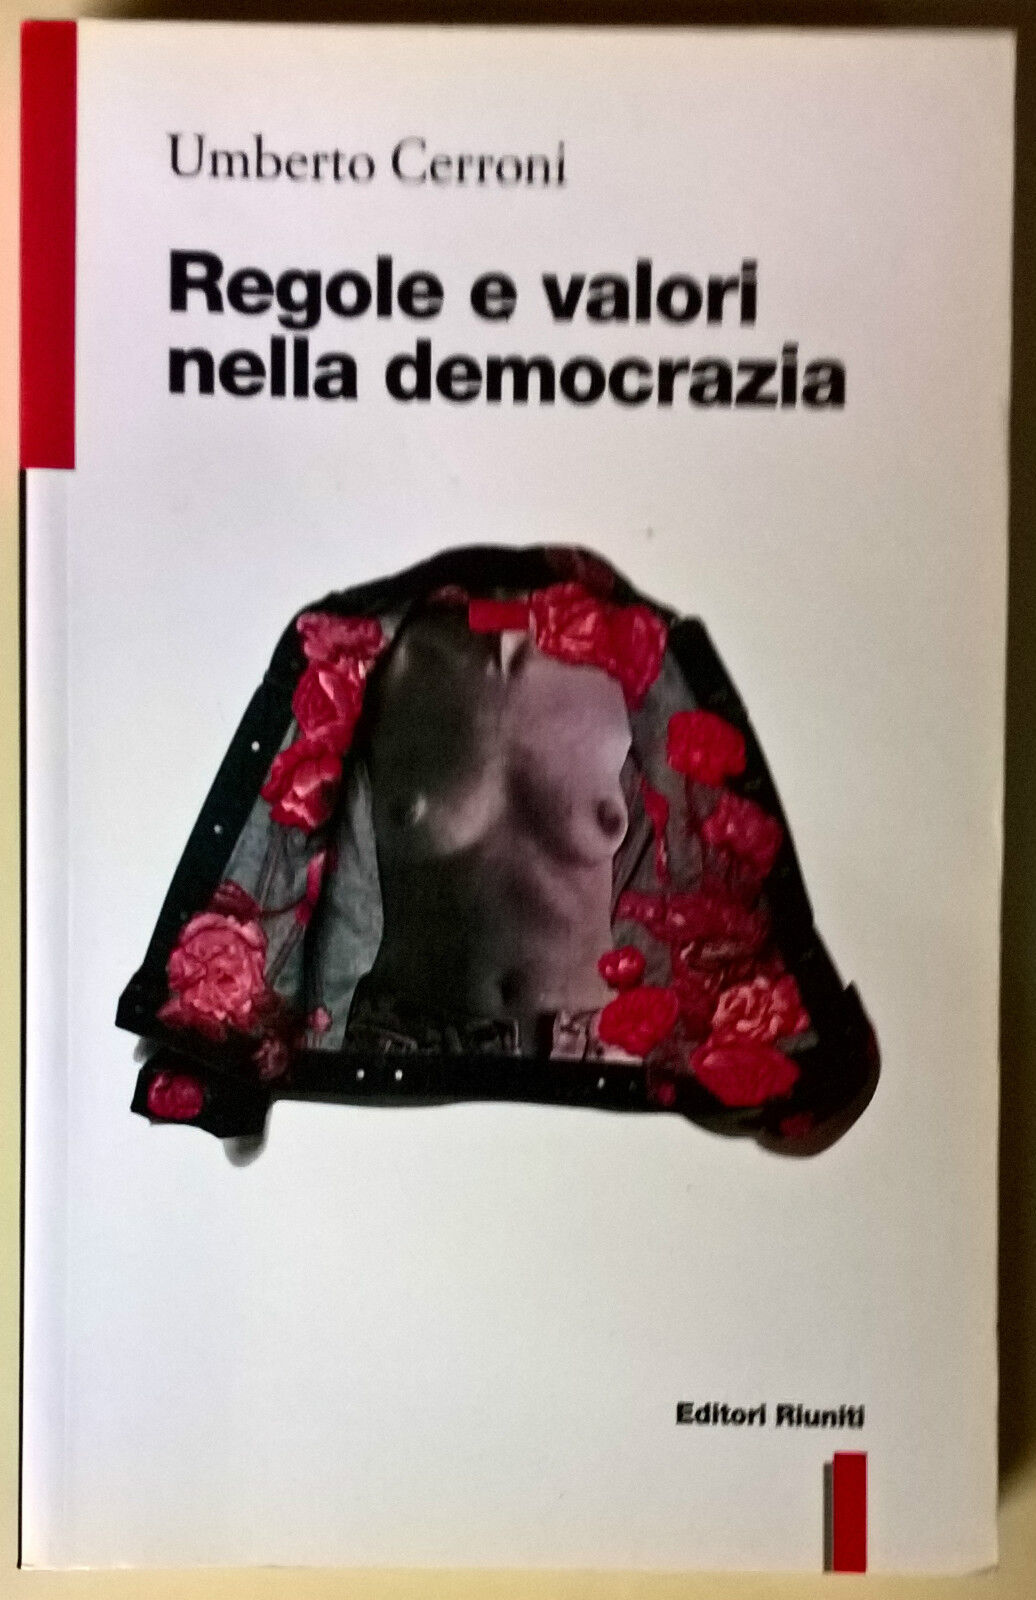 Regole e valori nella democrazia - Umberto Cerroni - 1996, Editori Riuniti - L 